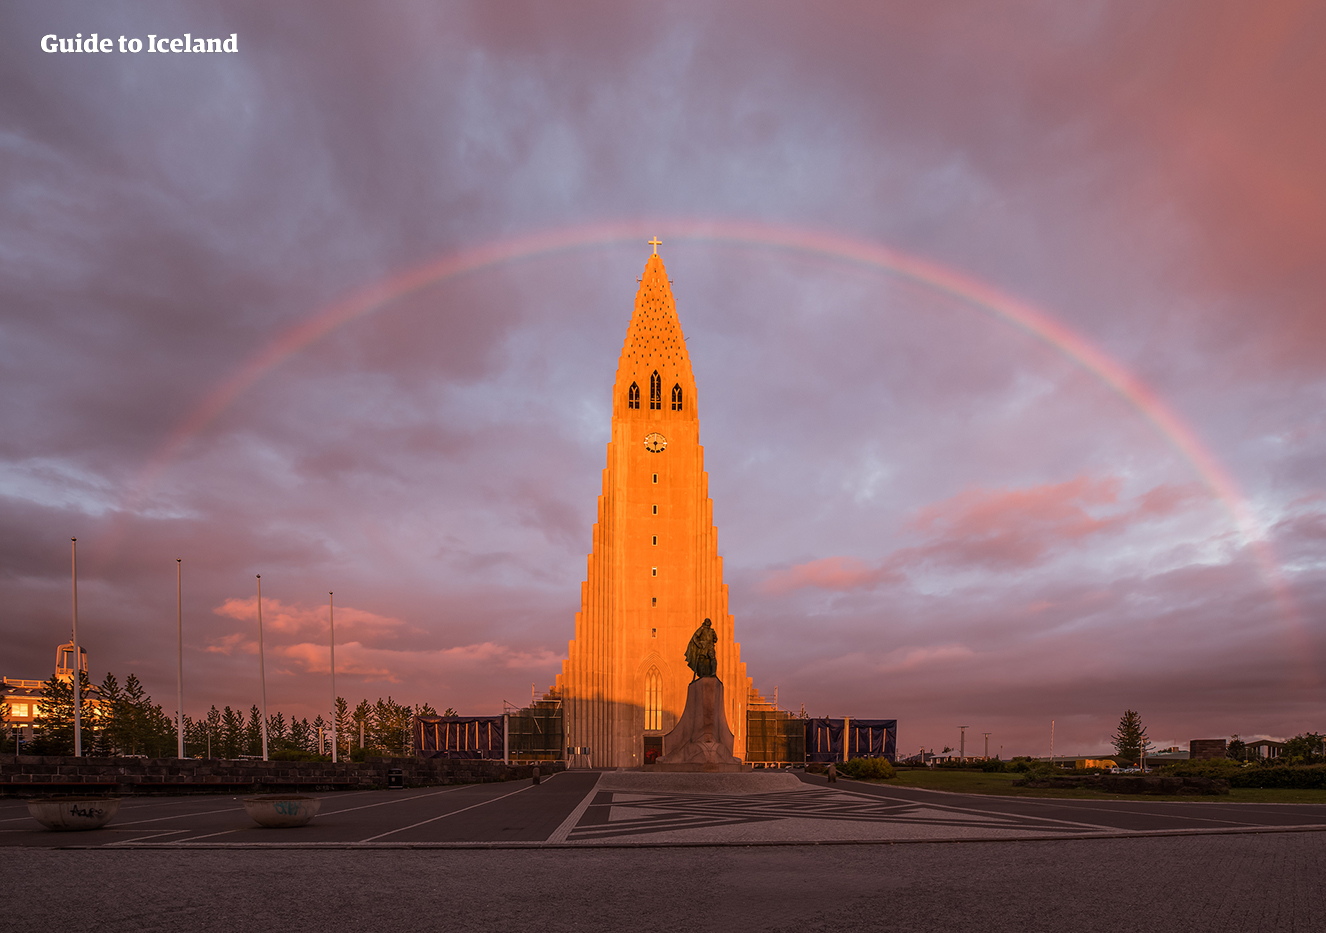 Passez la première nuit de votre autotour été à Reykjavík et découvrez les nombreux sites et activités que cette petite capitale a à offrir.